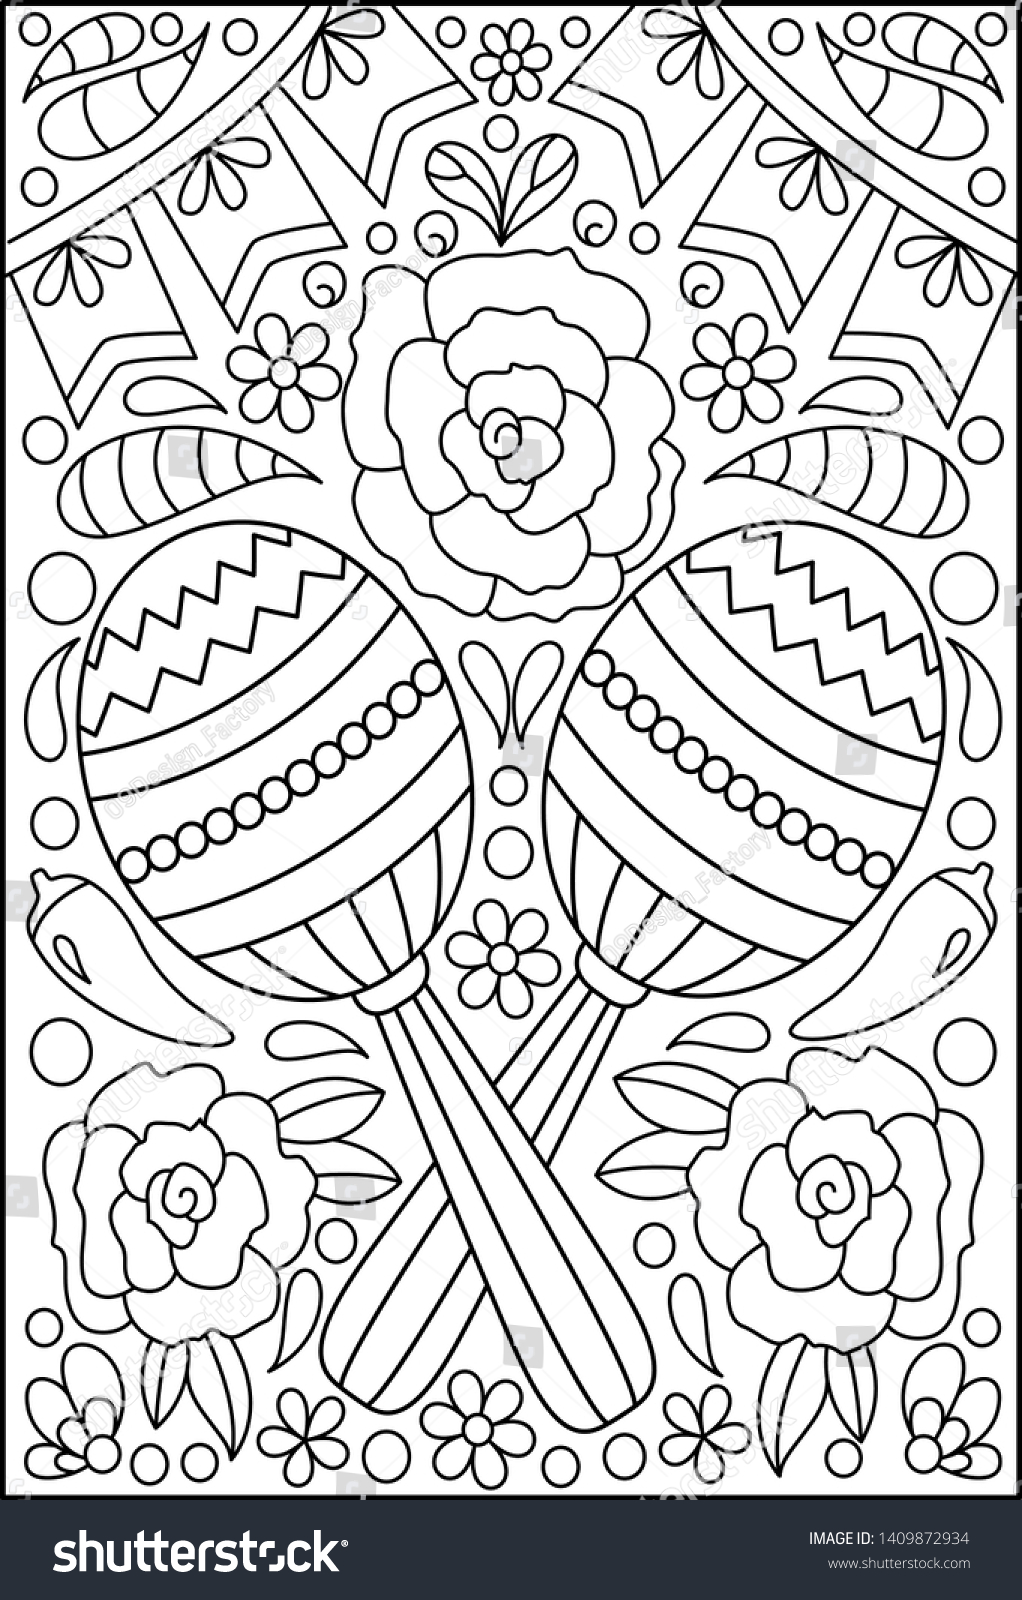 Hand drawn mexican sugar skulls coloring stock vector royalty free